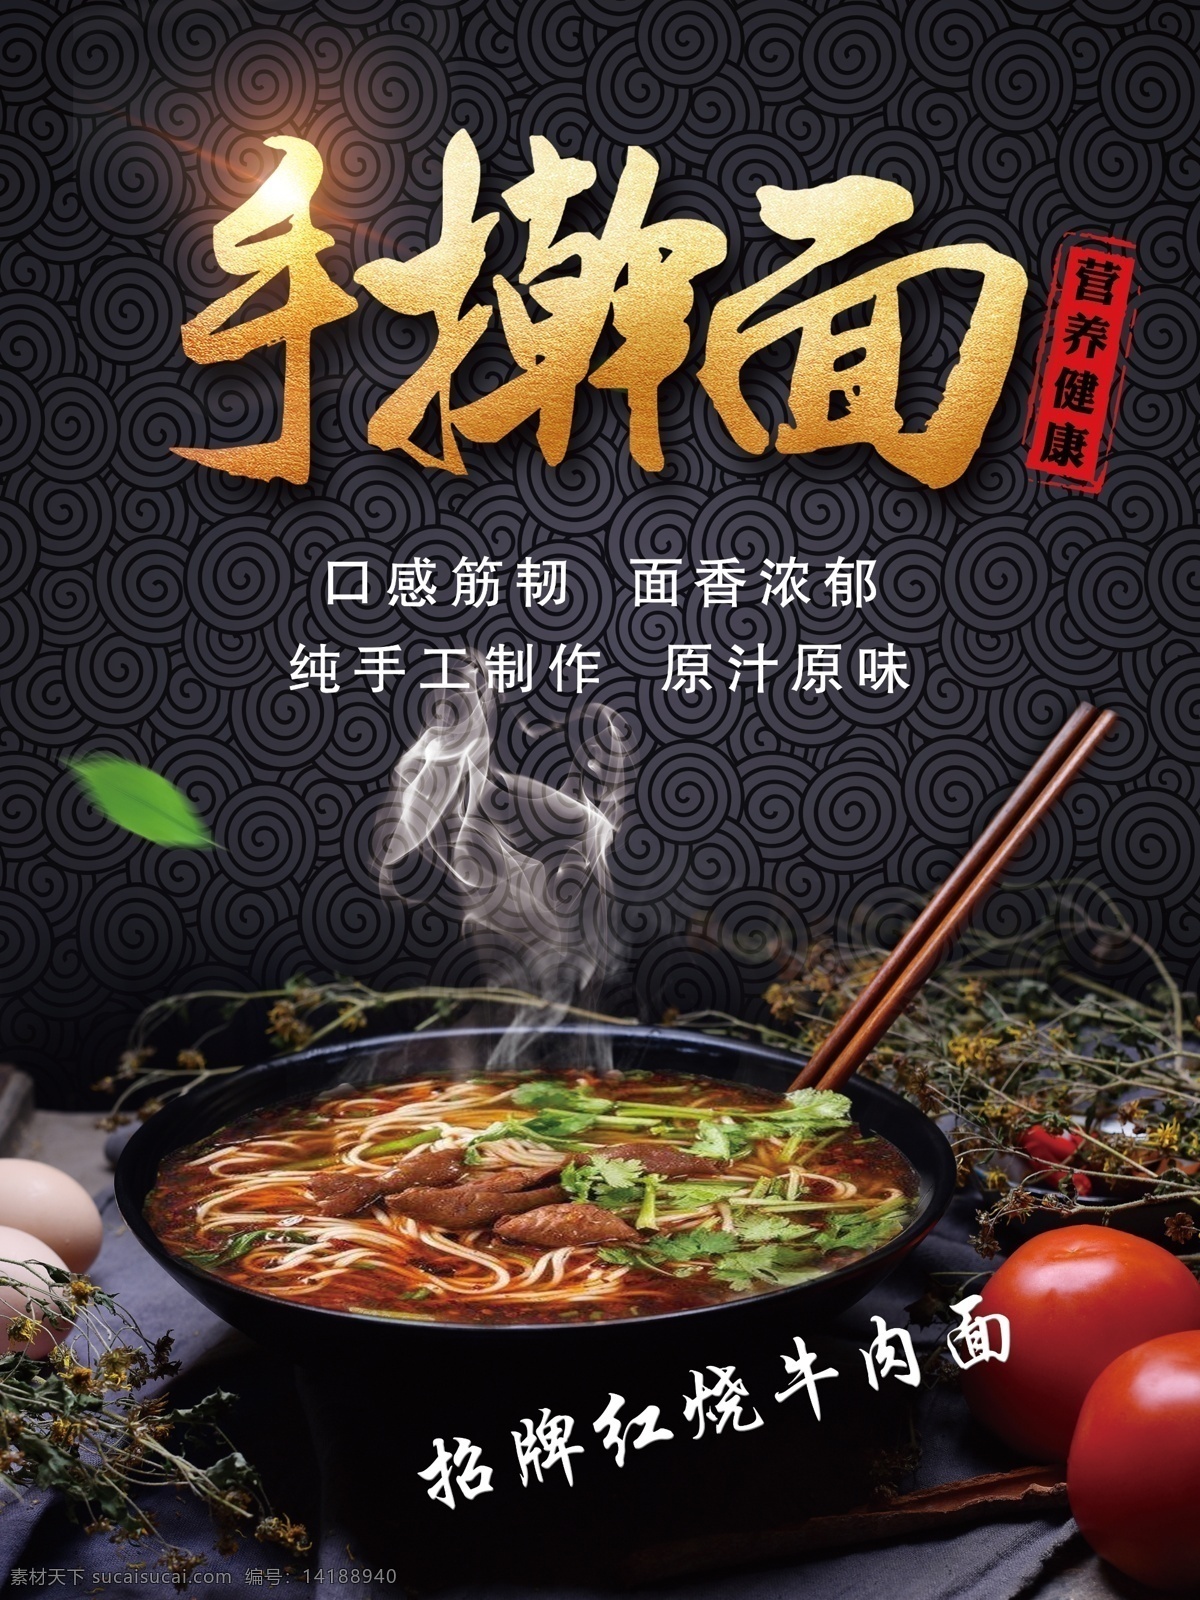 手擀面 宣传海报 中国美食 手工制作 宣传 海报 价目表菜单